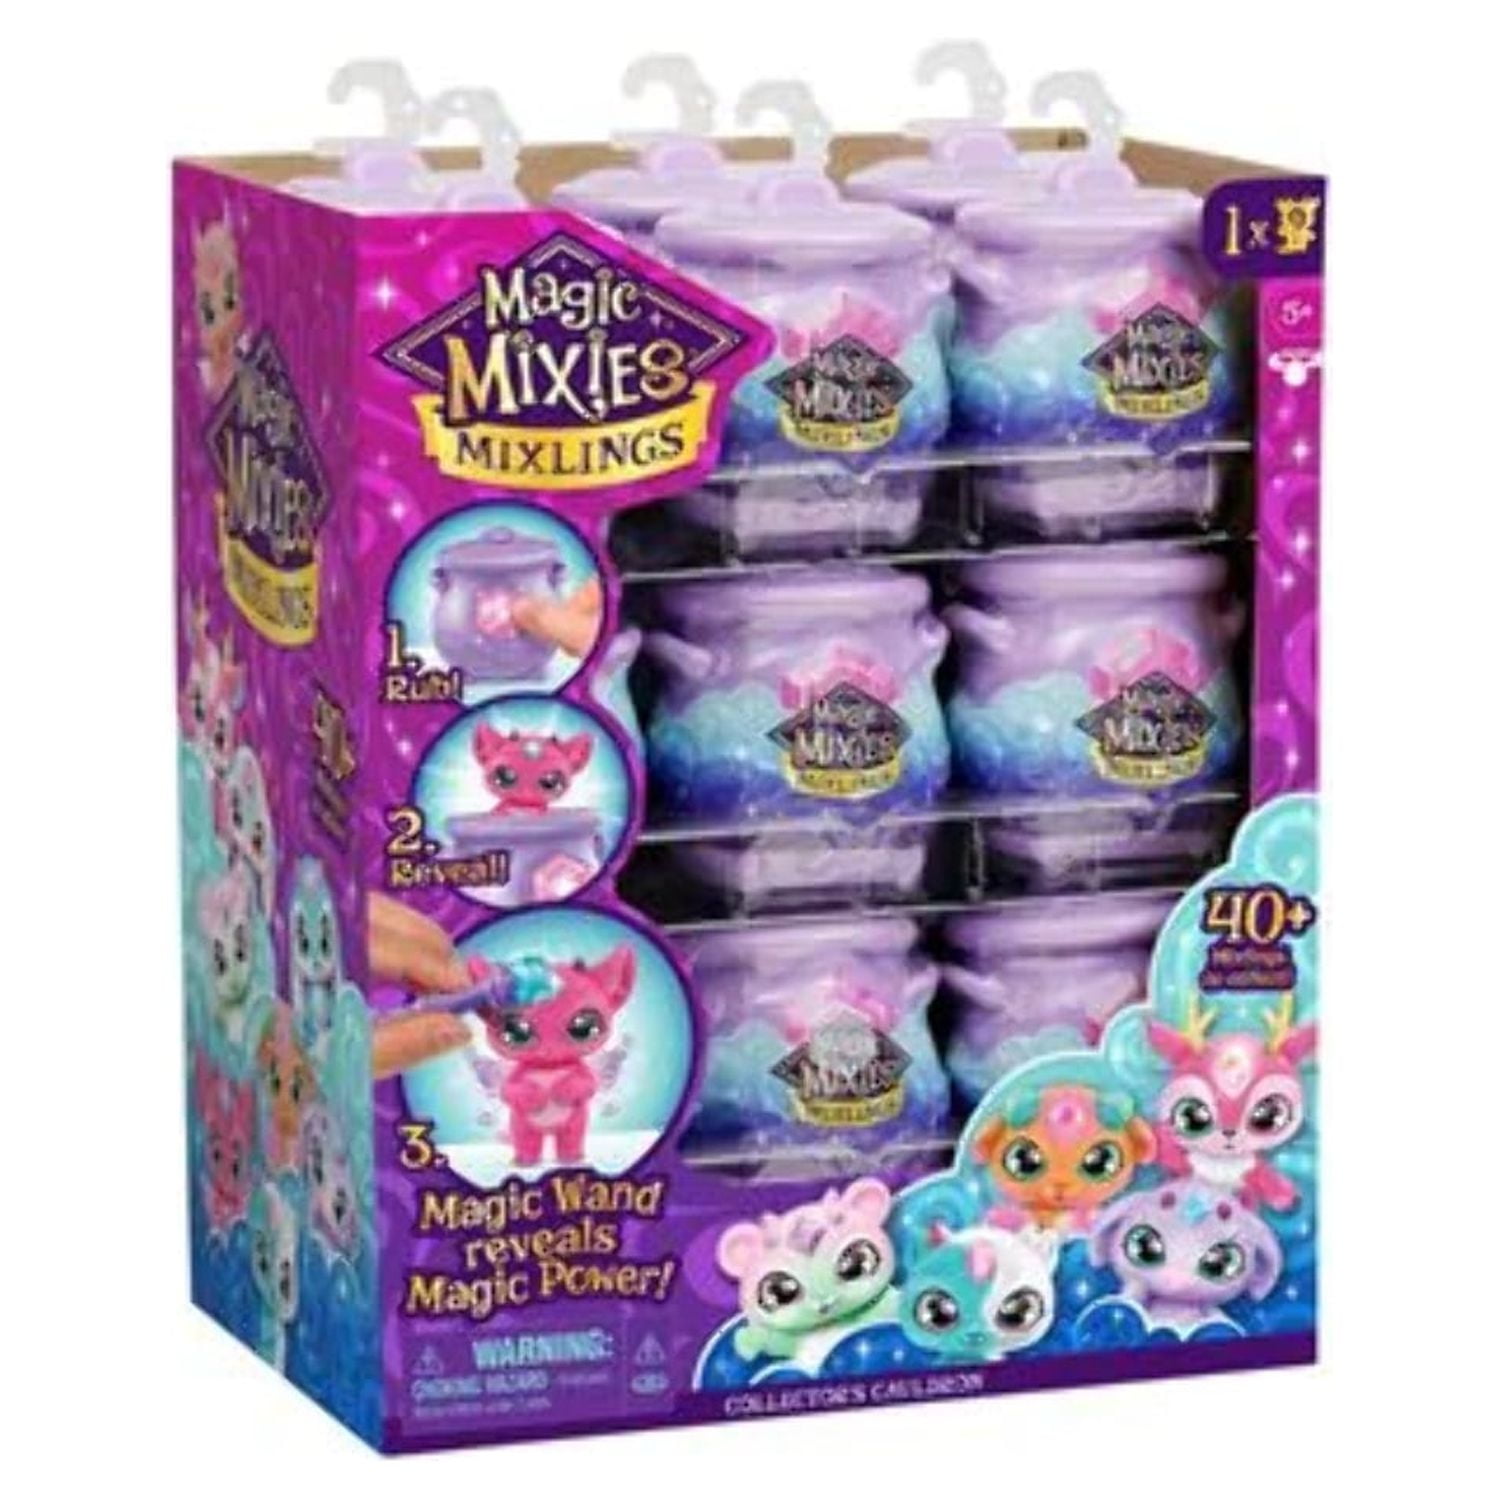 Magic Mixies - Chaudron magique, pack de recharge - Moose Toys